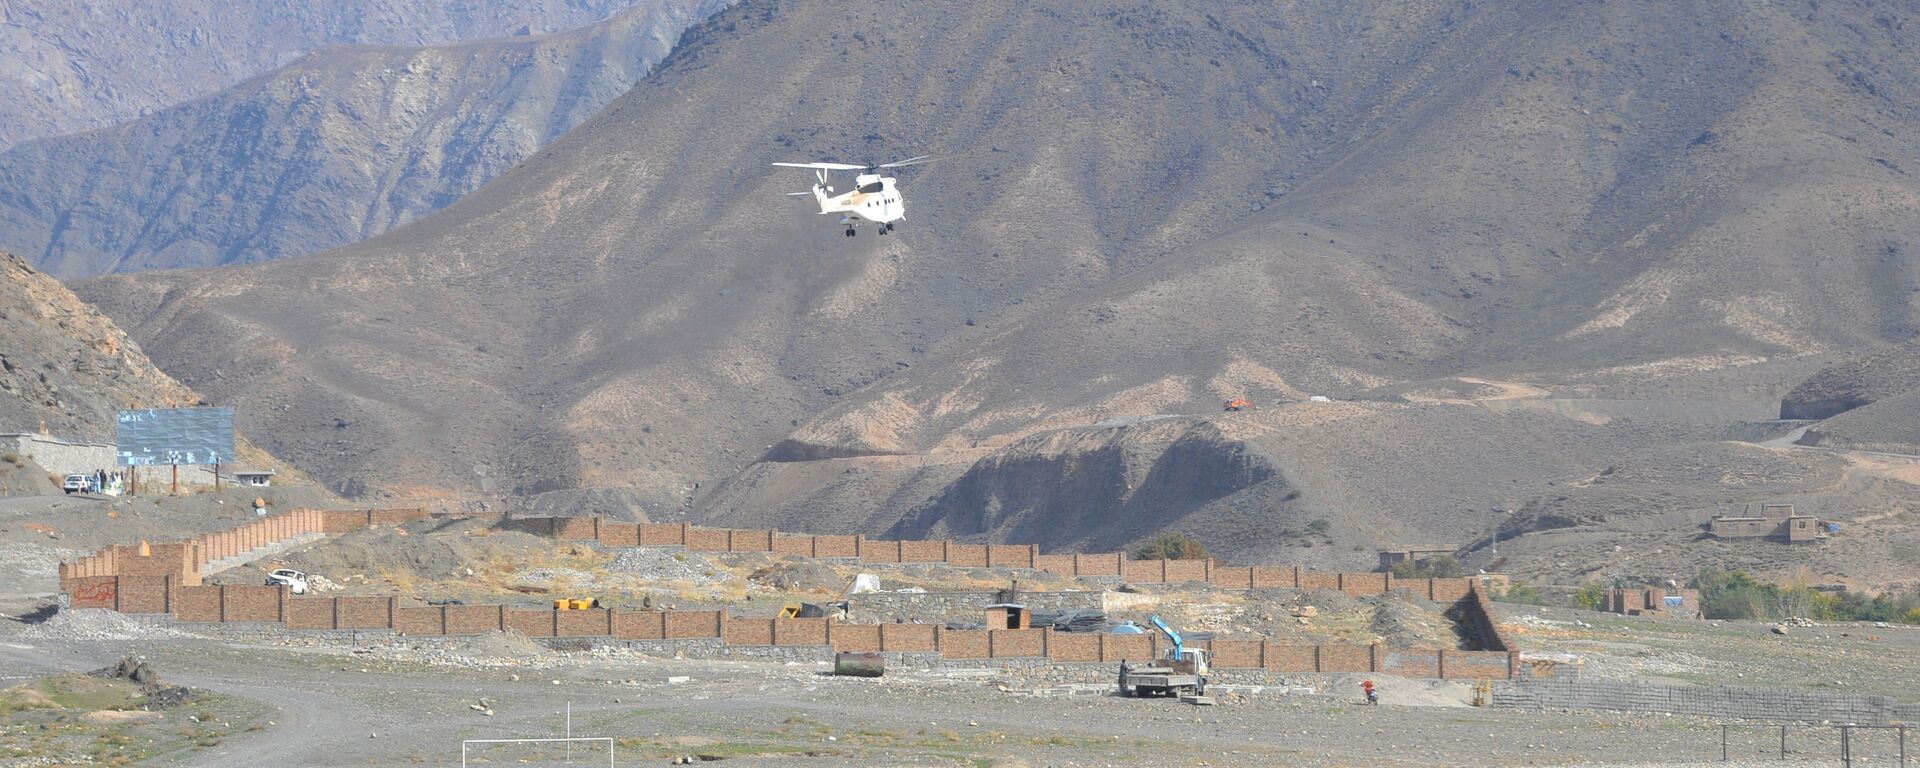 Транспортный вертолет в горах Афганистана - Sputnik Ўзбекистон, 1920, 07.12.2019